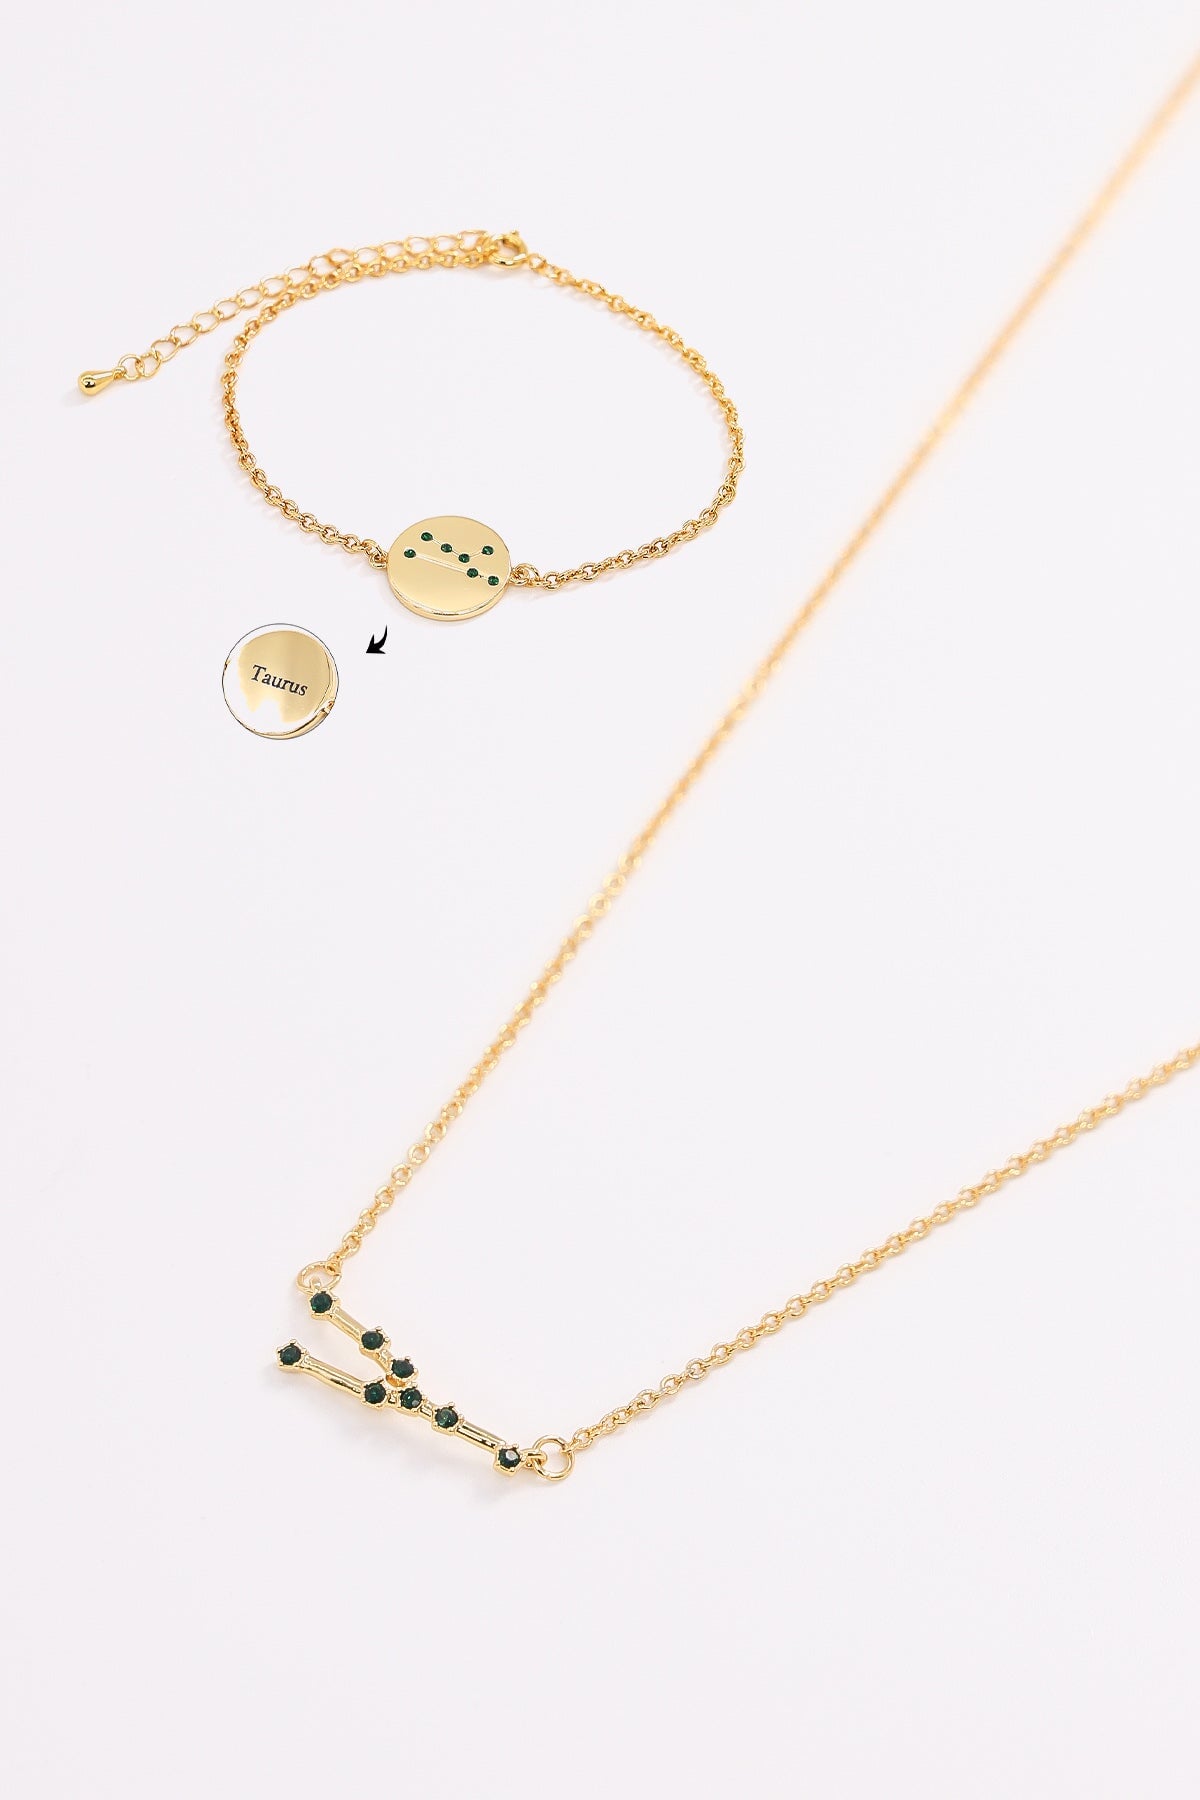 Taurus Necklace / Zodiac Necklace | Linjer Jewelry